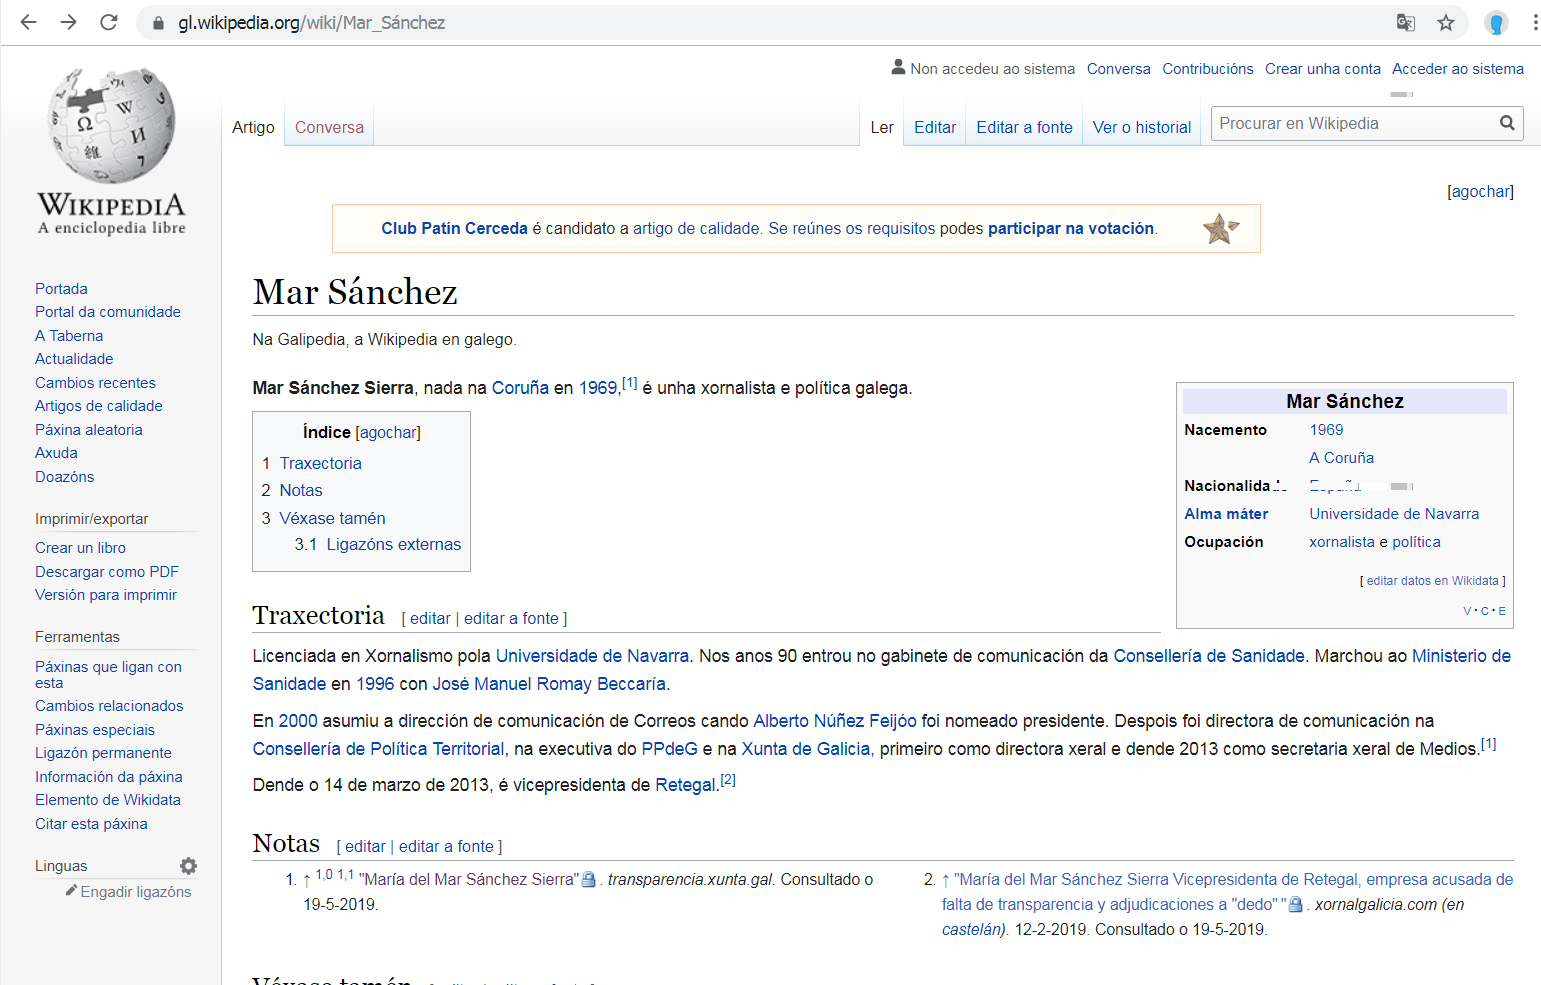 MarSanchezSierra na wikipedia